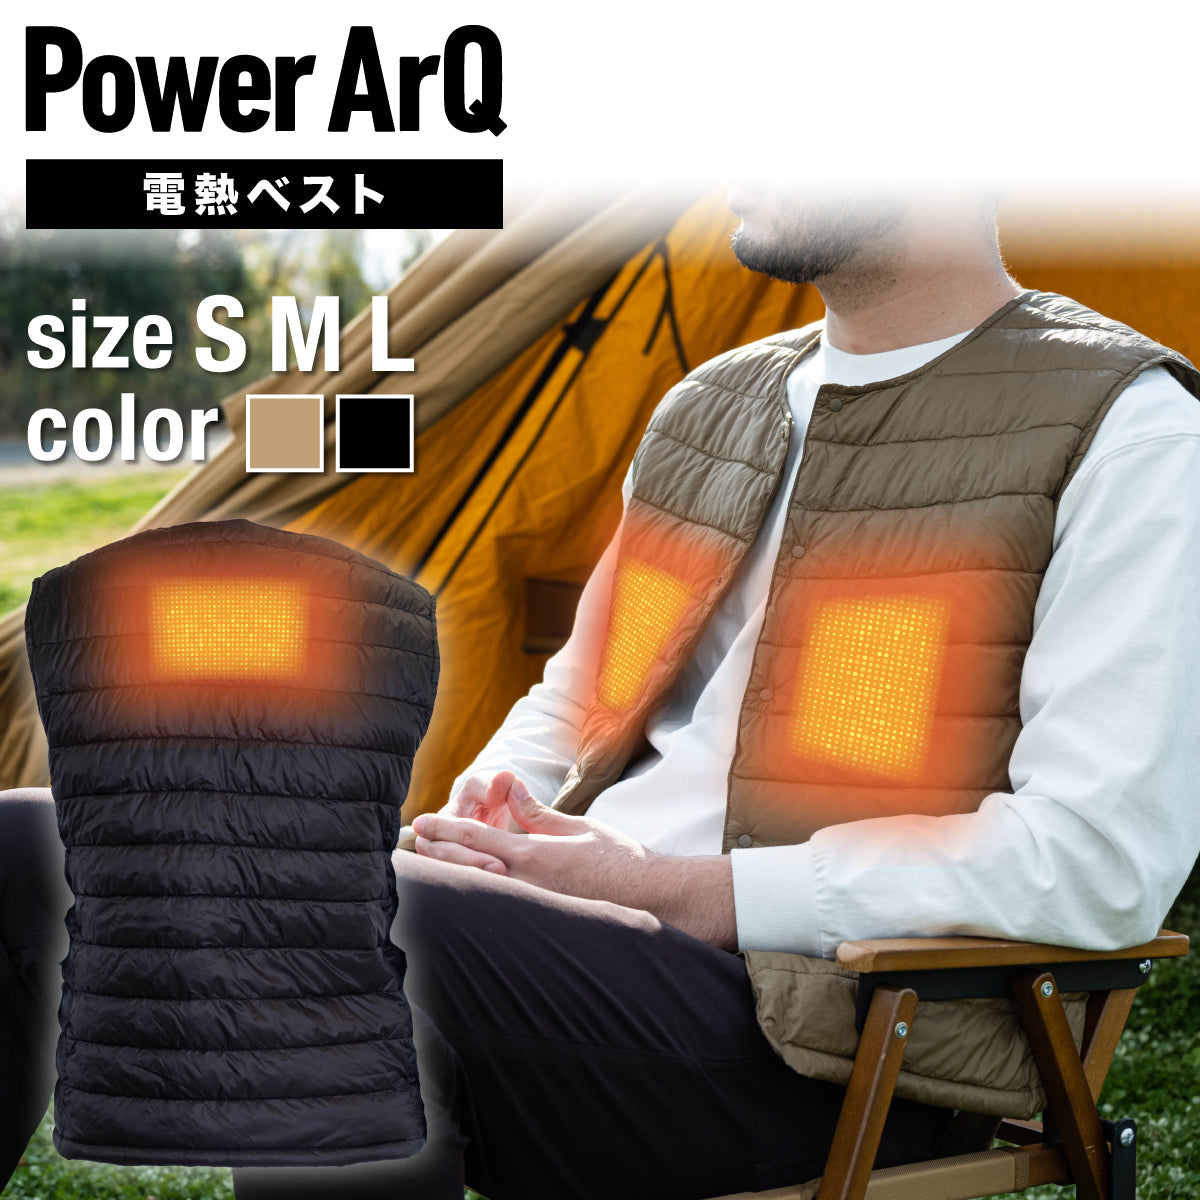 PowerArQ 加熱ベスト Electric Heating Vest バッテリー おしゃれ